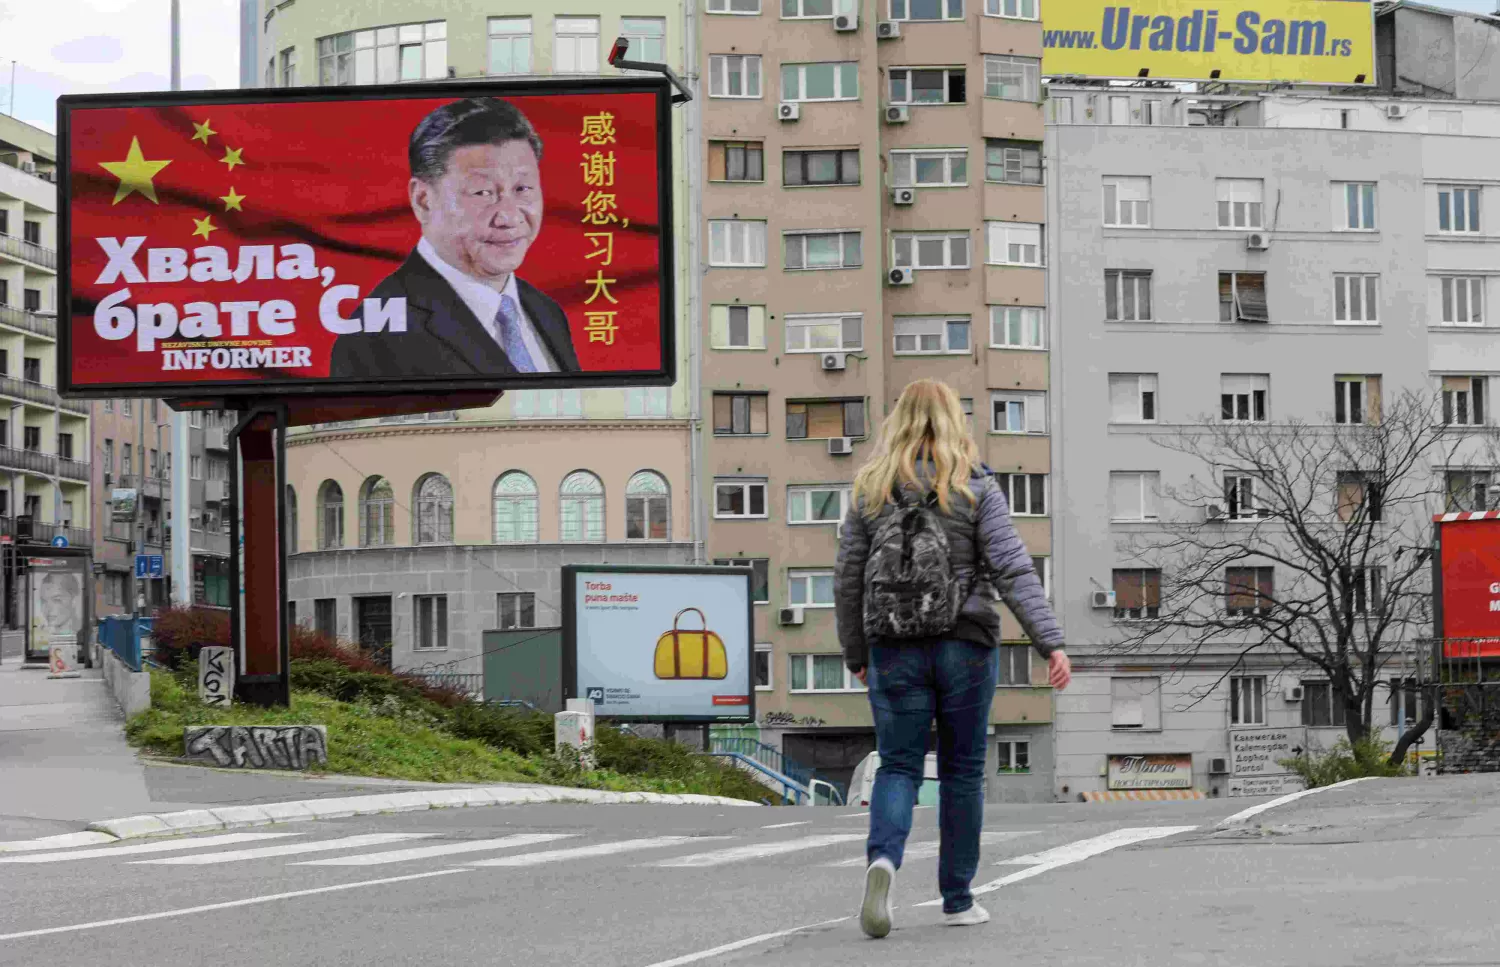 LA IRONÍA. Una mujer camina cerca de un enorme cartel de Belgrado, que dice Gracias hermano Ji, en referencia a la liberación de la pandemia. REUTERS